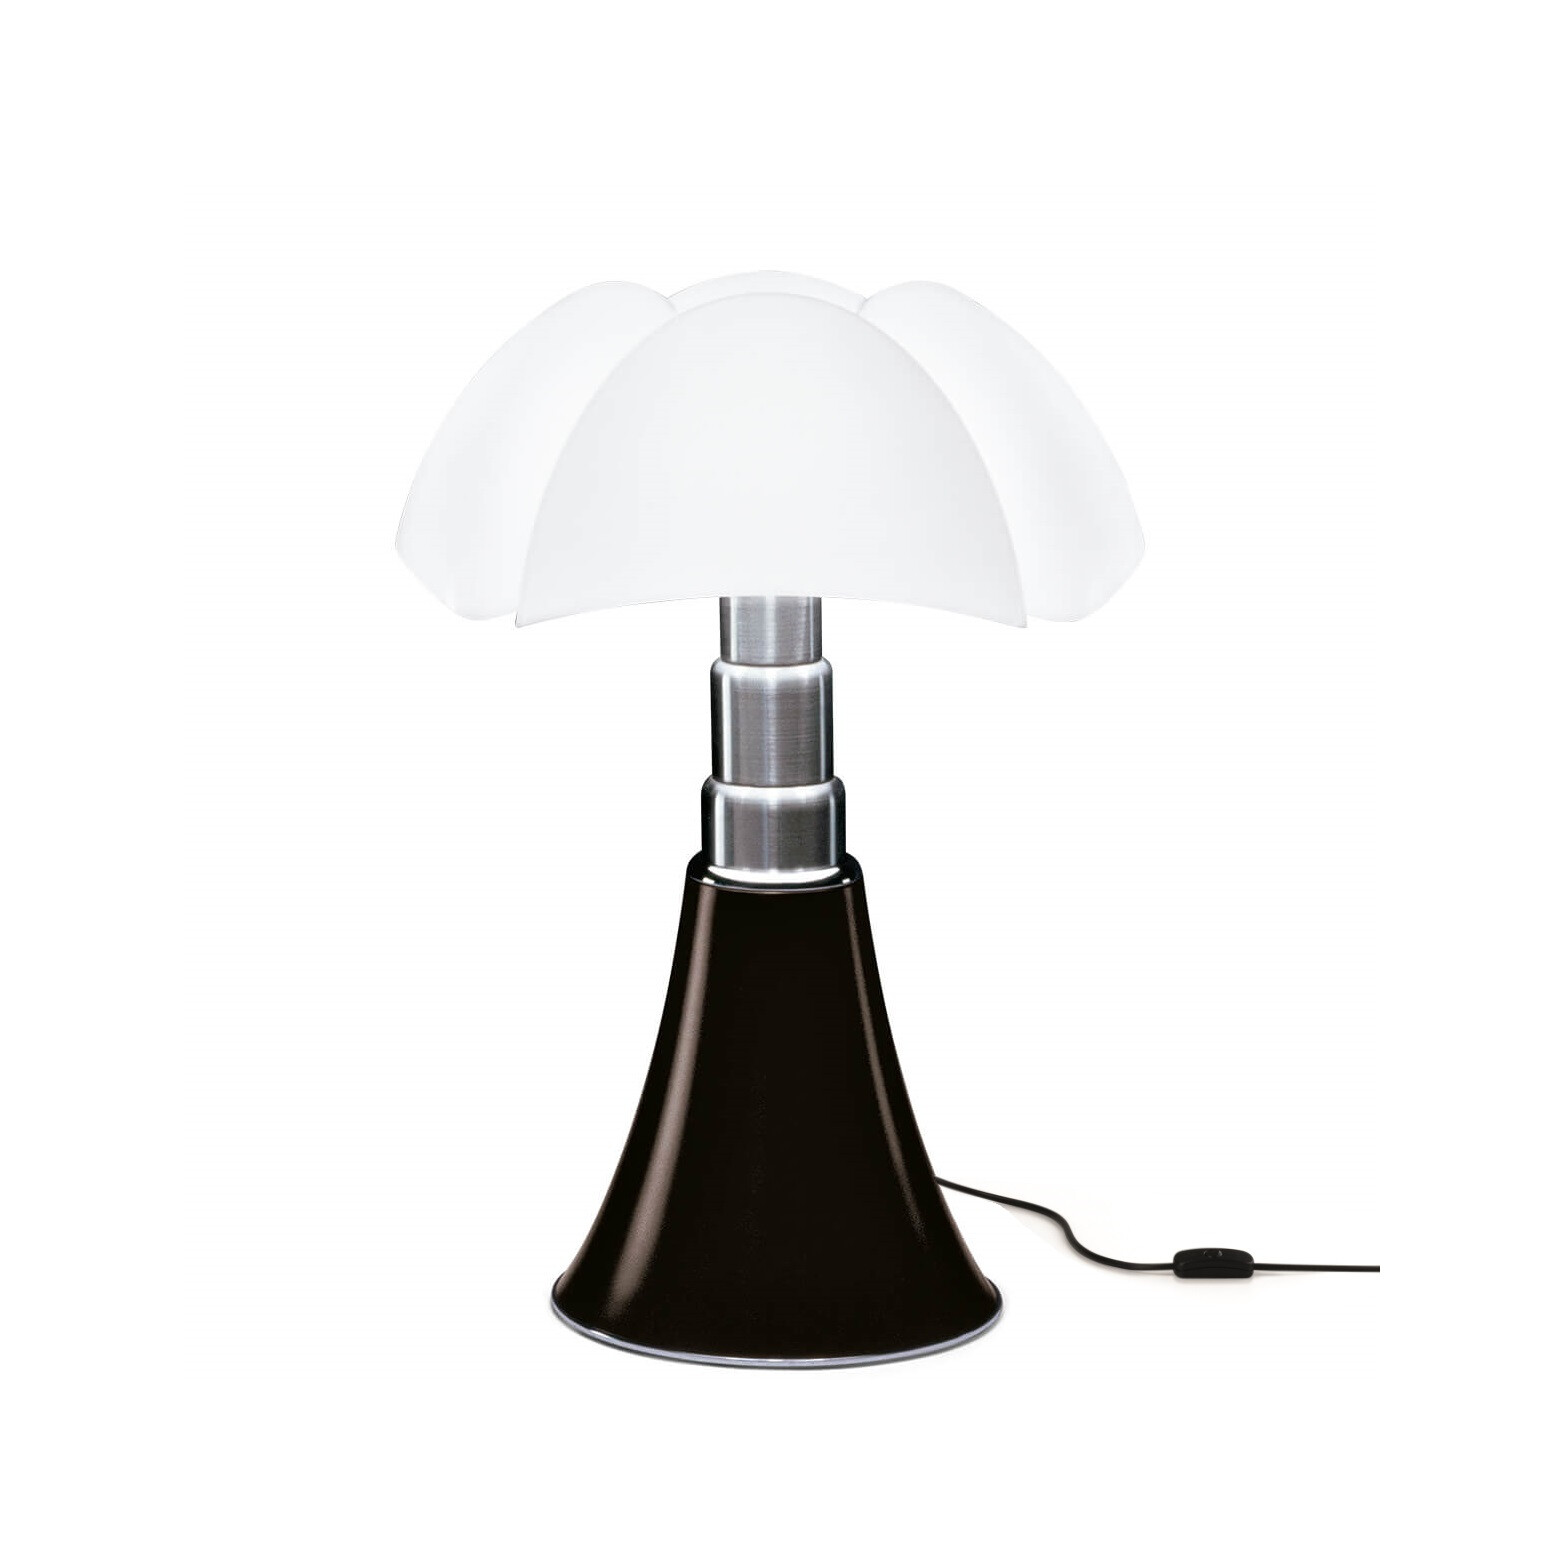 Minipipistrello Table Lamp Dimmable, Dark Brown Desk Lamp